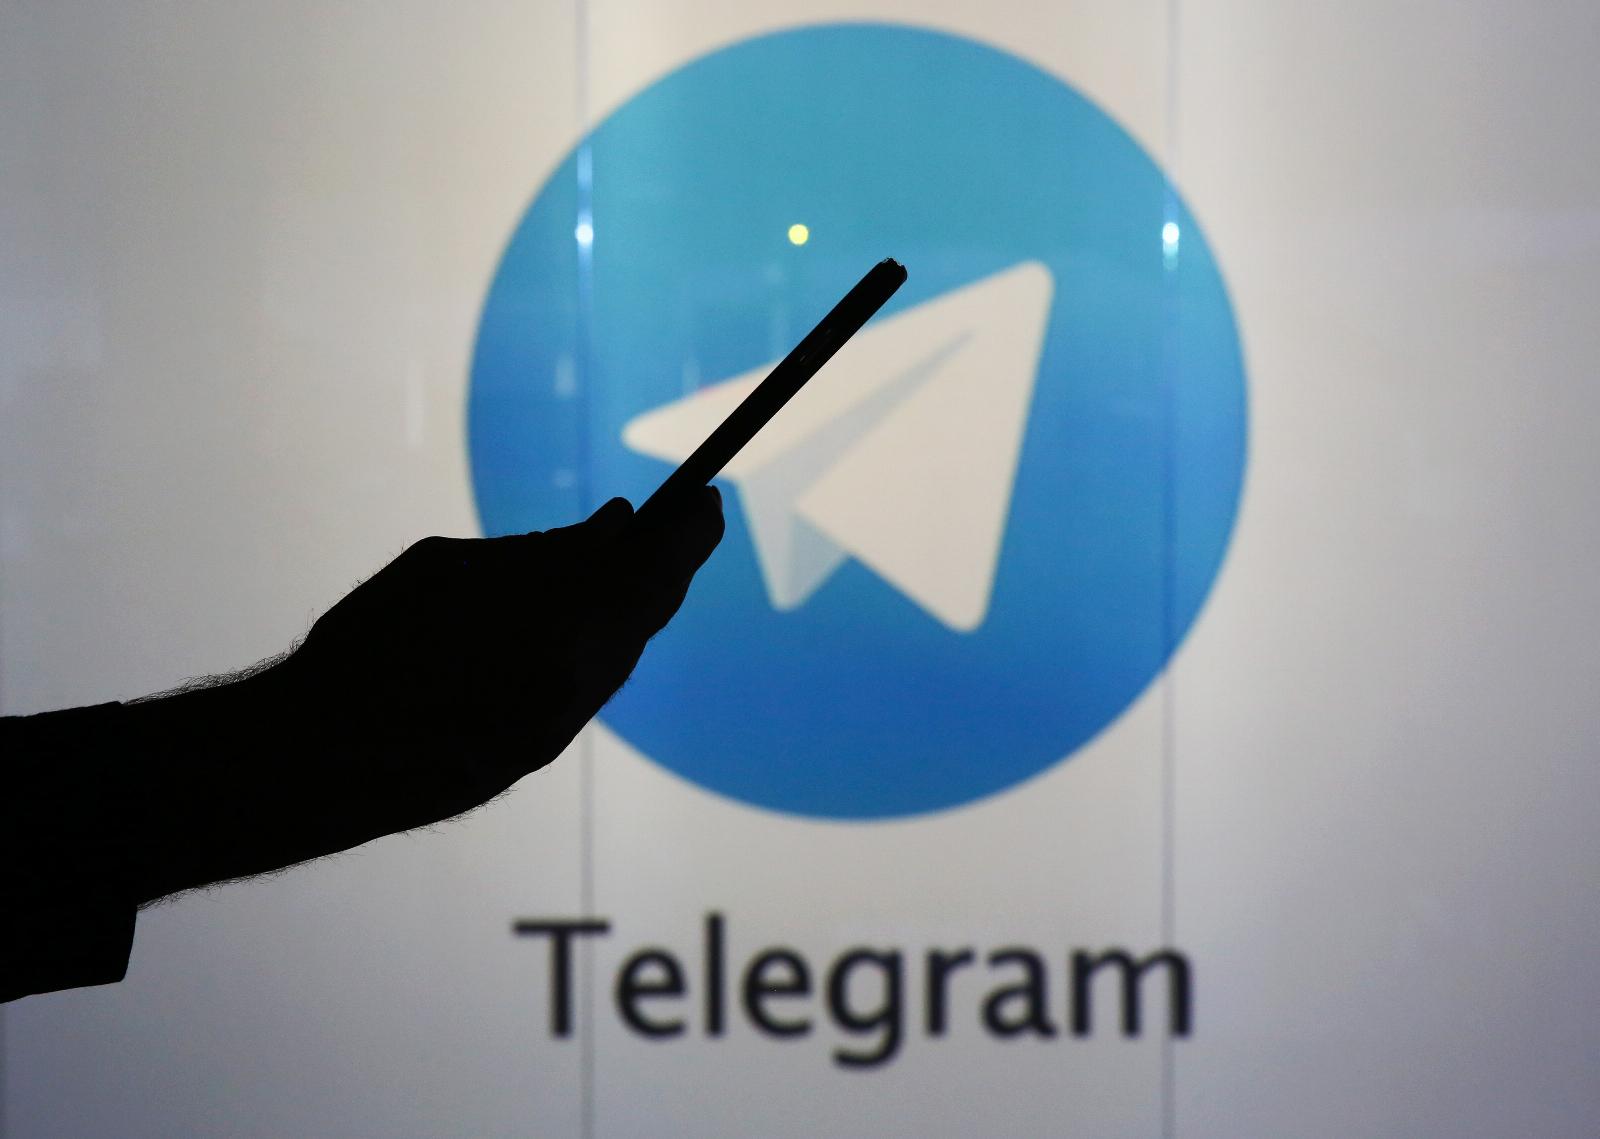 Telegram is adding Stories next month